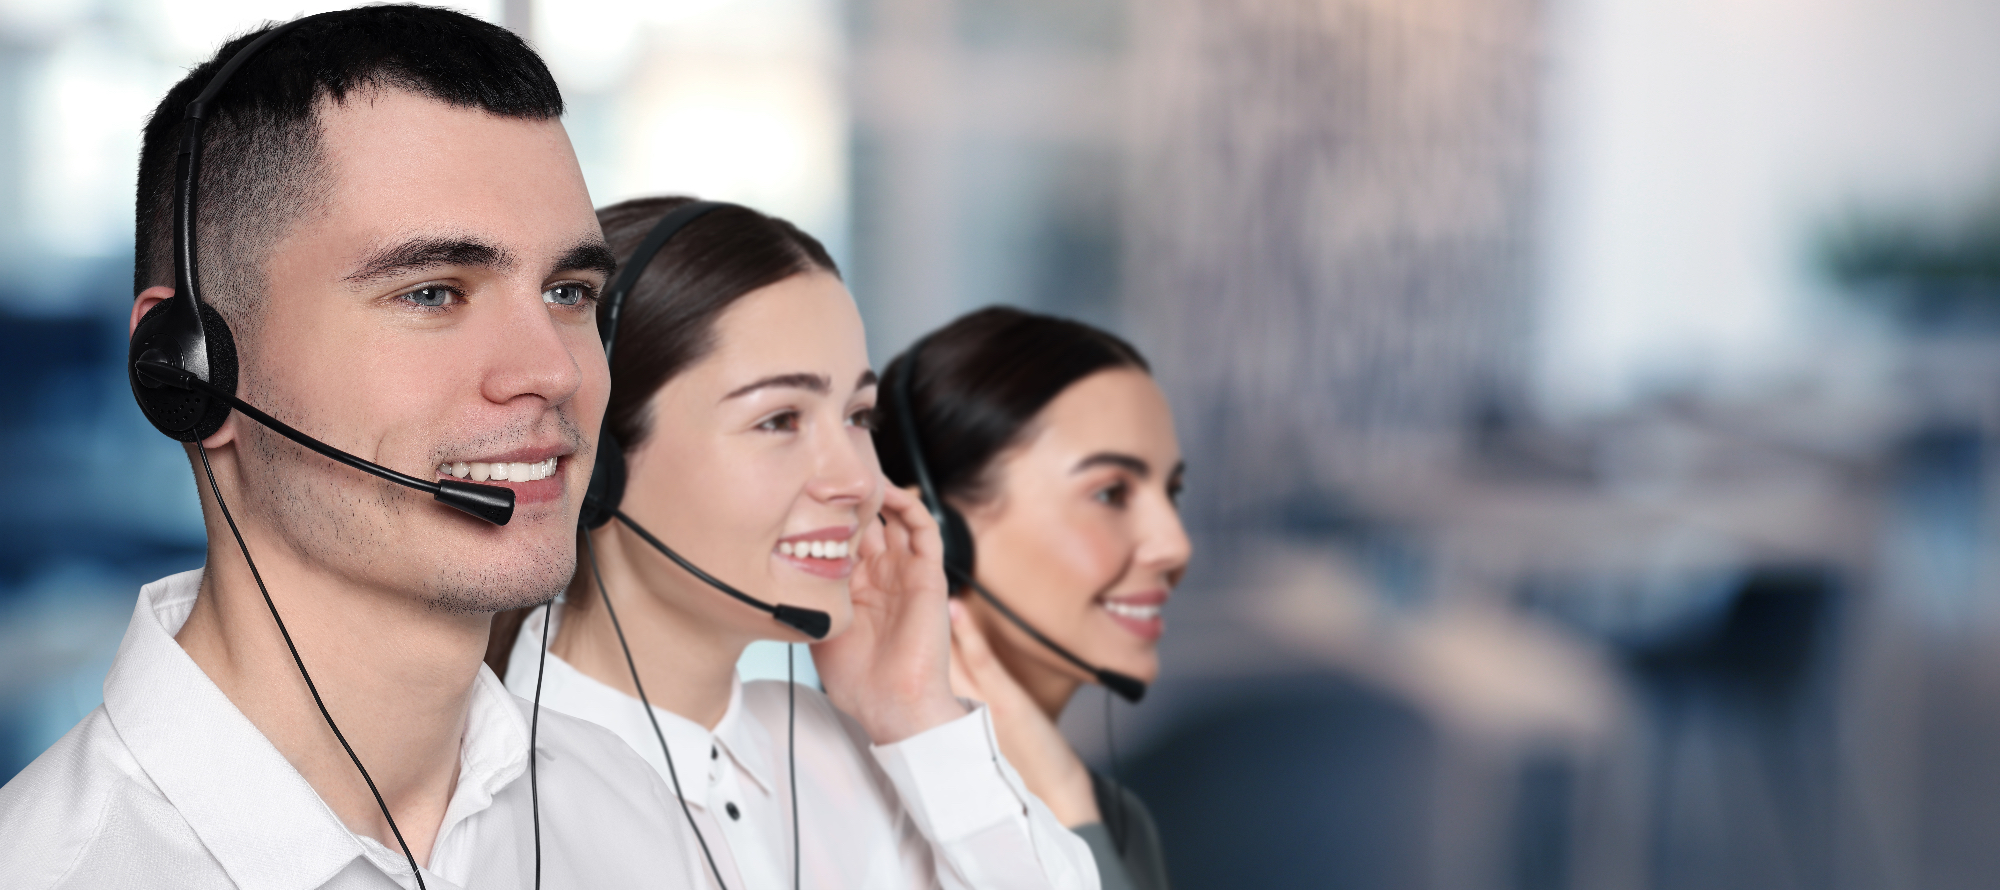 Određeni call centar može funkcionirati i na globalnoj razini